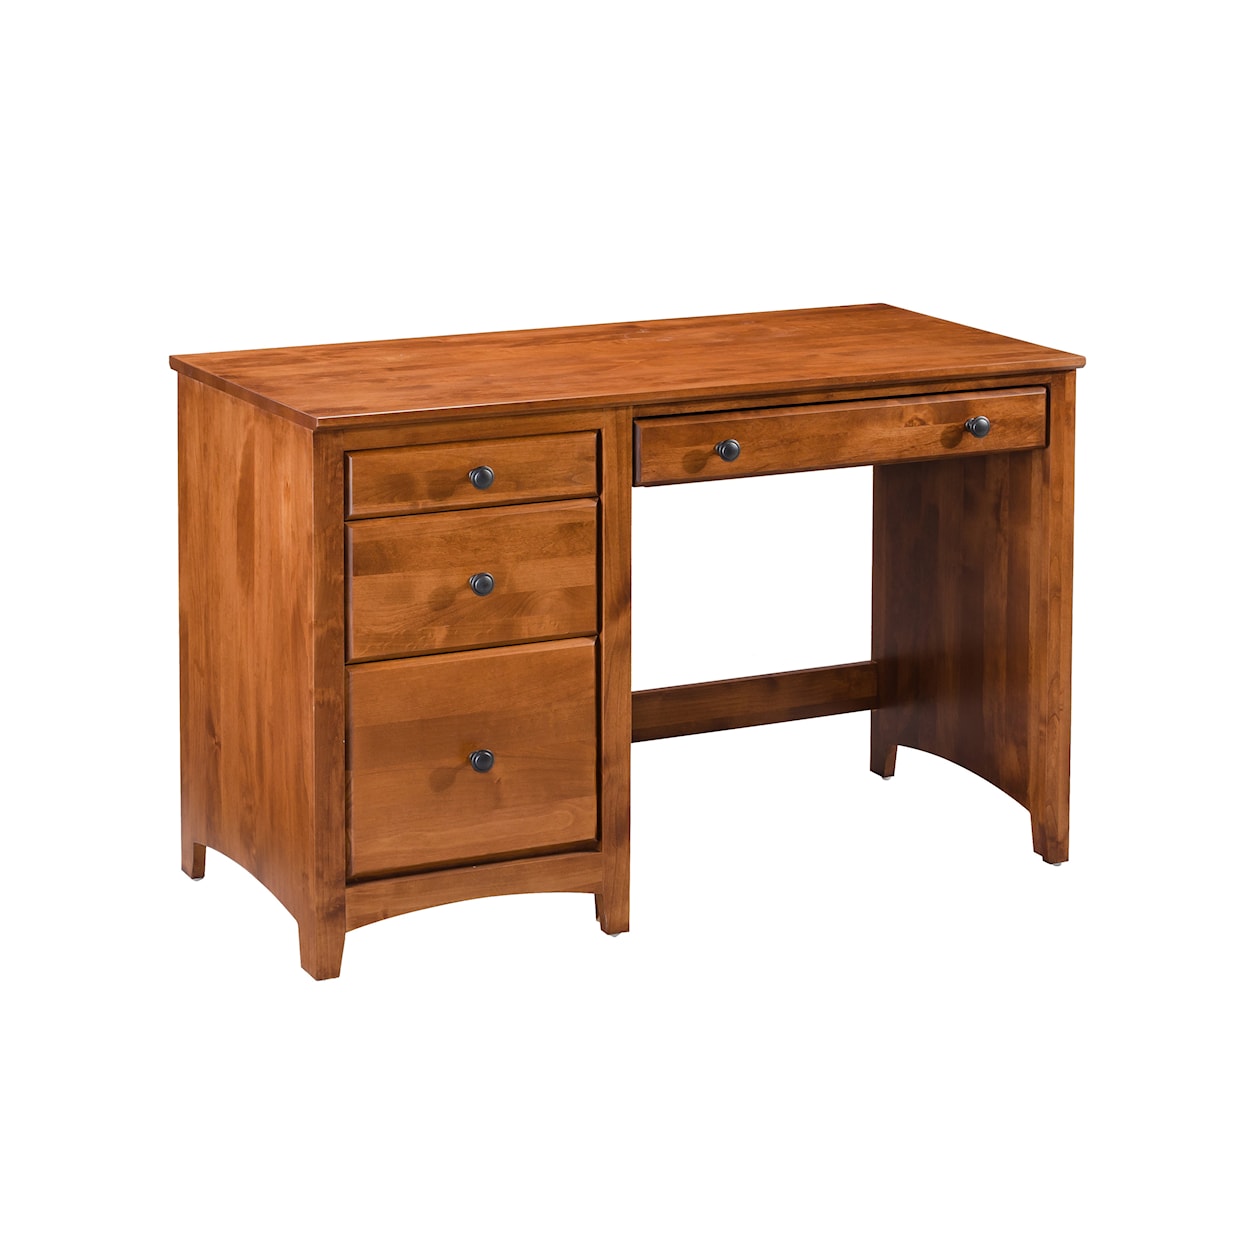 Archbold Furniture Home Office 4 Drawer Student Desk 